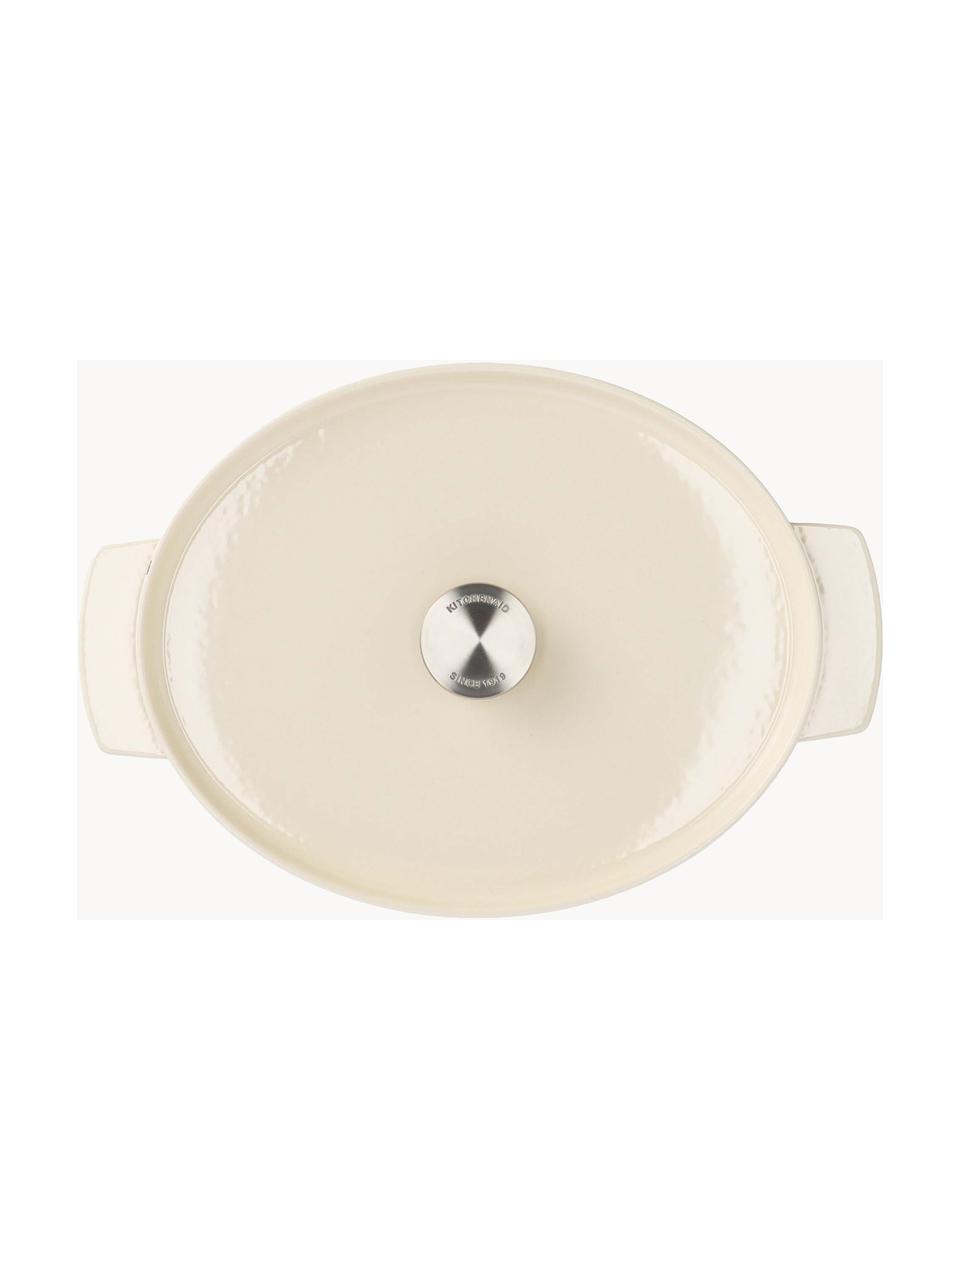 Ovale braadpan Doelle met antiaanbaklaag, Gietijzer met keramische antiaanbaklaag, Off White, L 40 cm, B 29 cm, H 16 cm